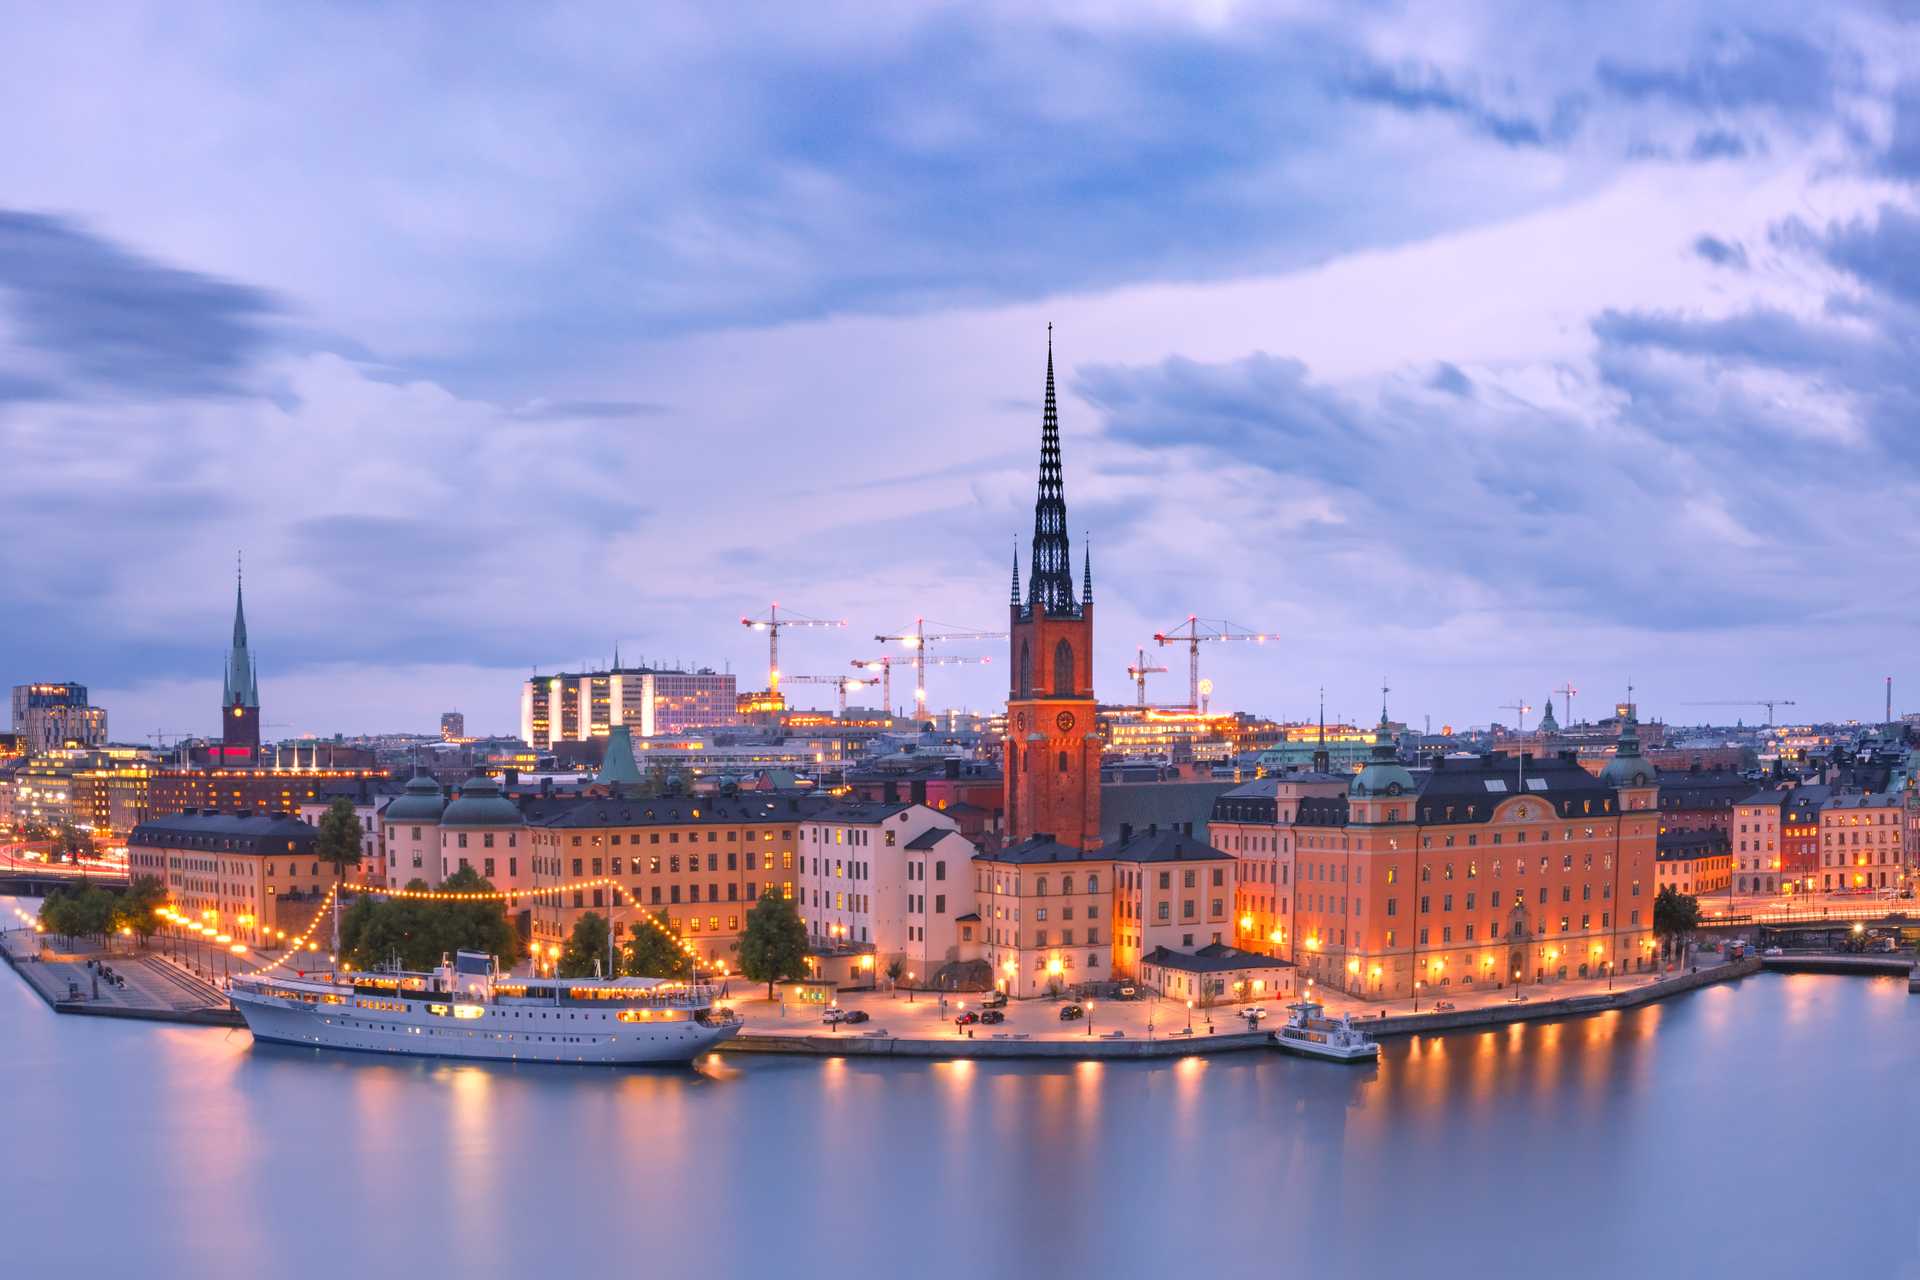 Stockholm ( Dánsko ), tip na trip, tip na nejlevnější letenka